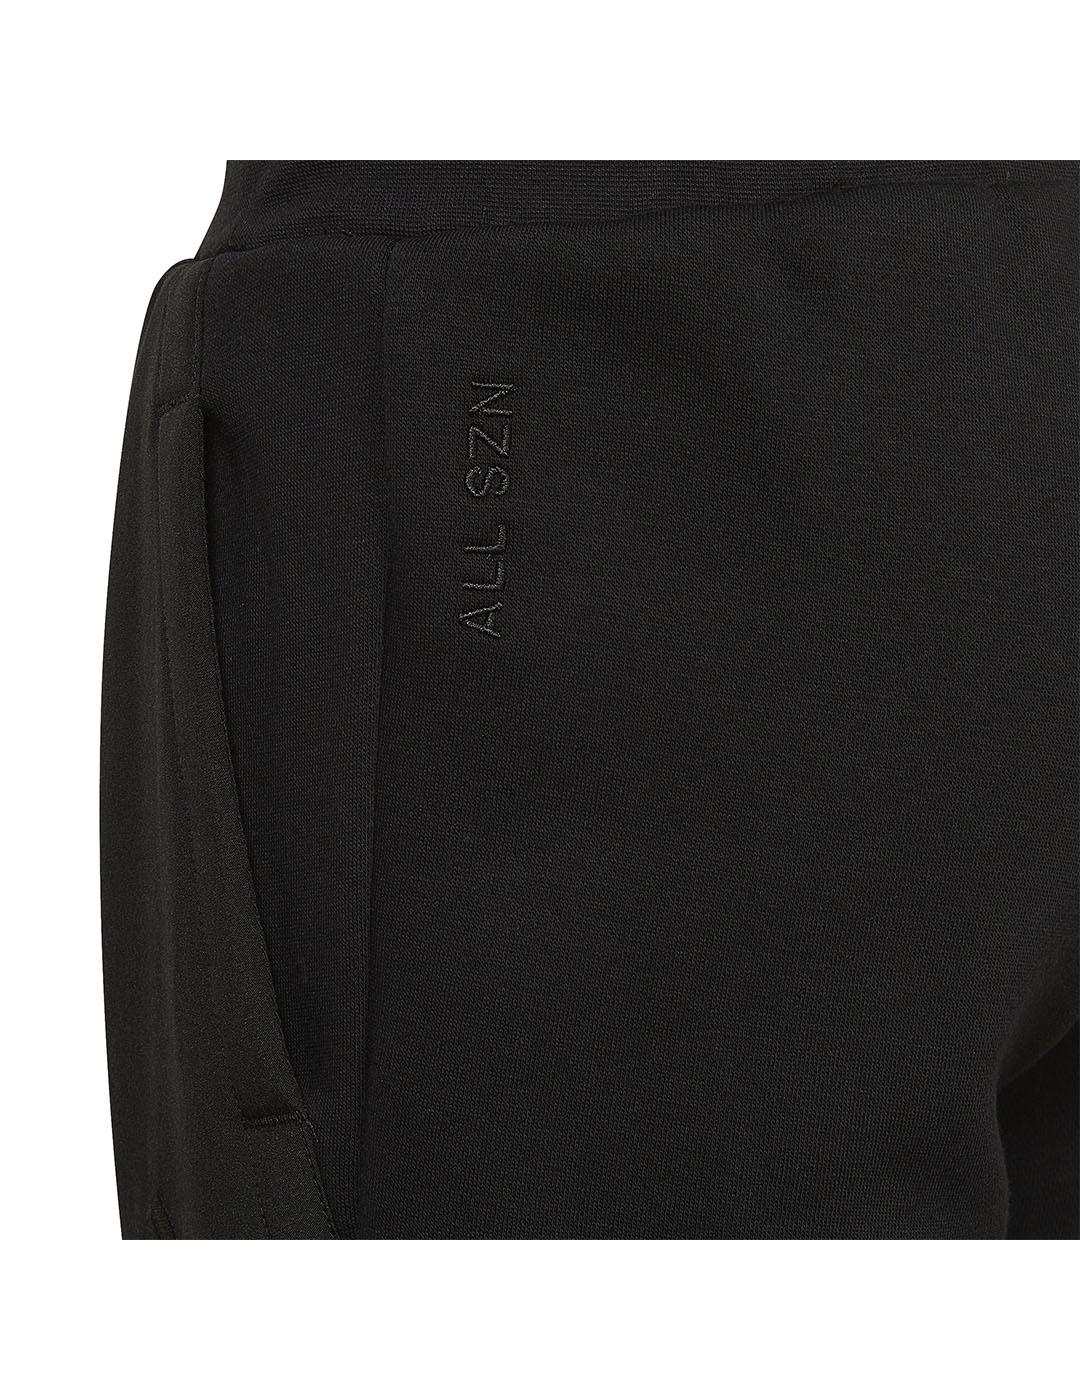 Pantalón Niño adidas Fleece Negro/Gris